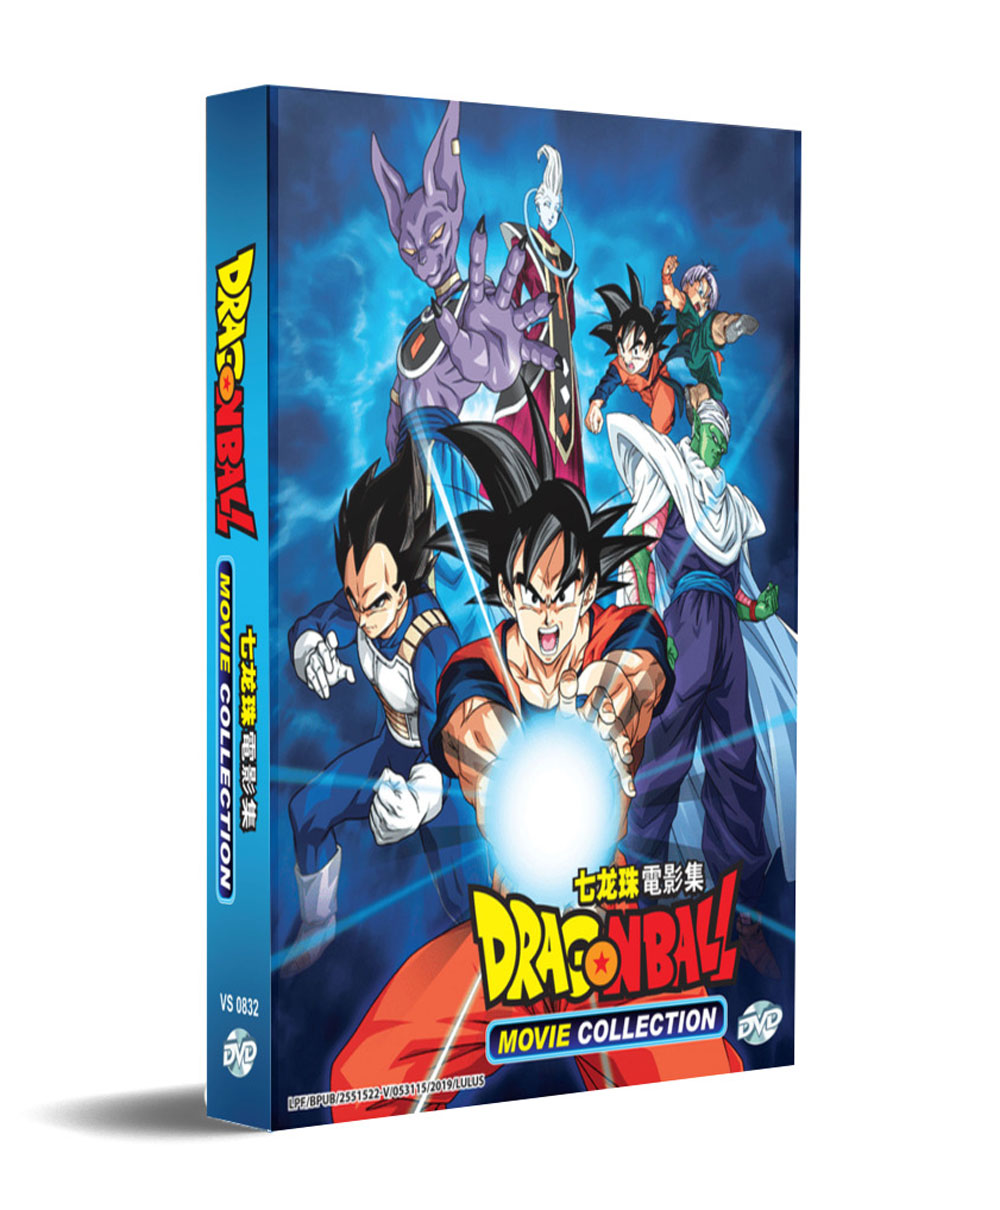 Dragon Ball Movie Collection (DVD) (1986-2018) Anime